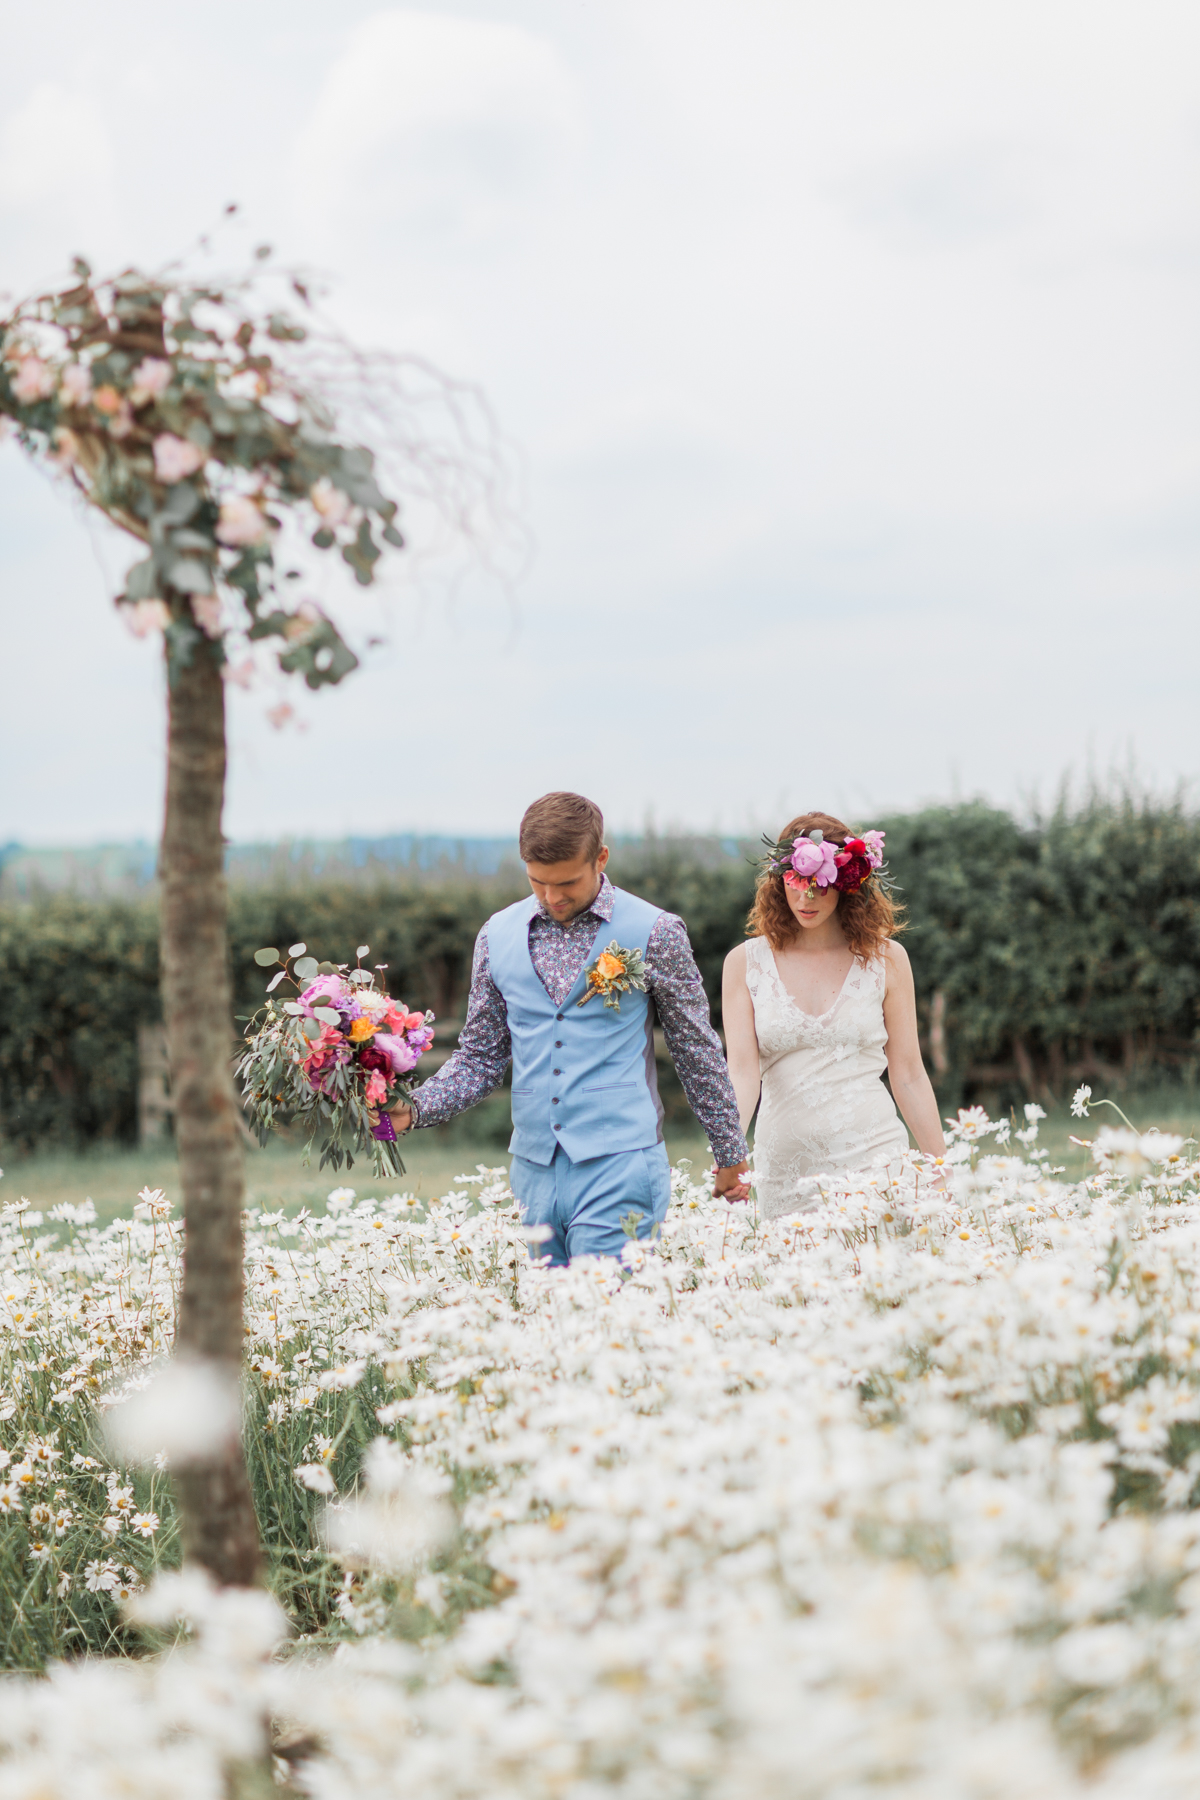 British wildflower meadow wedding inspiration - photography by Jo Bradbury.